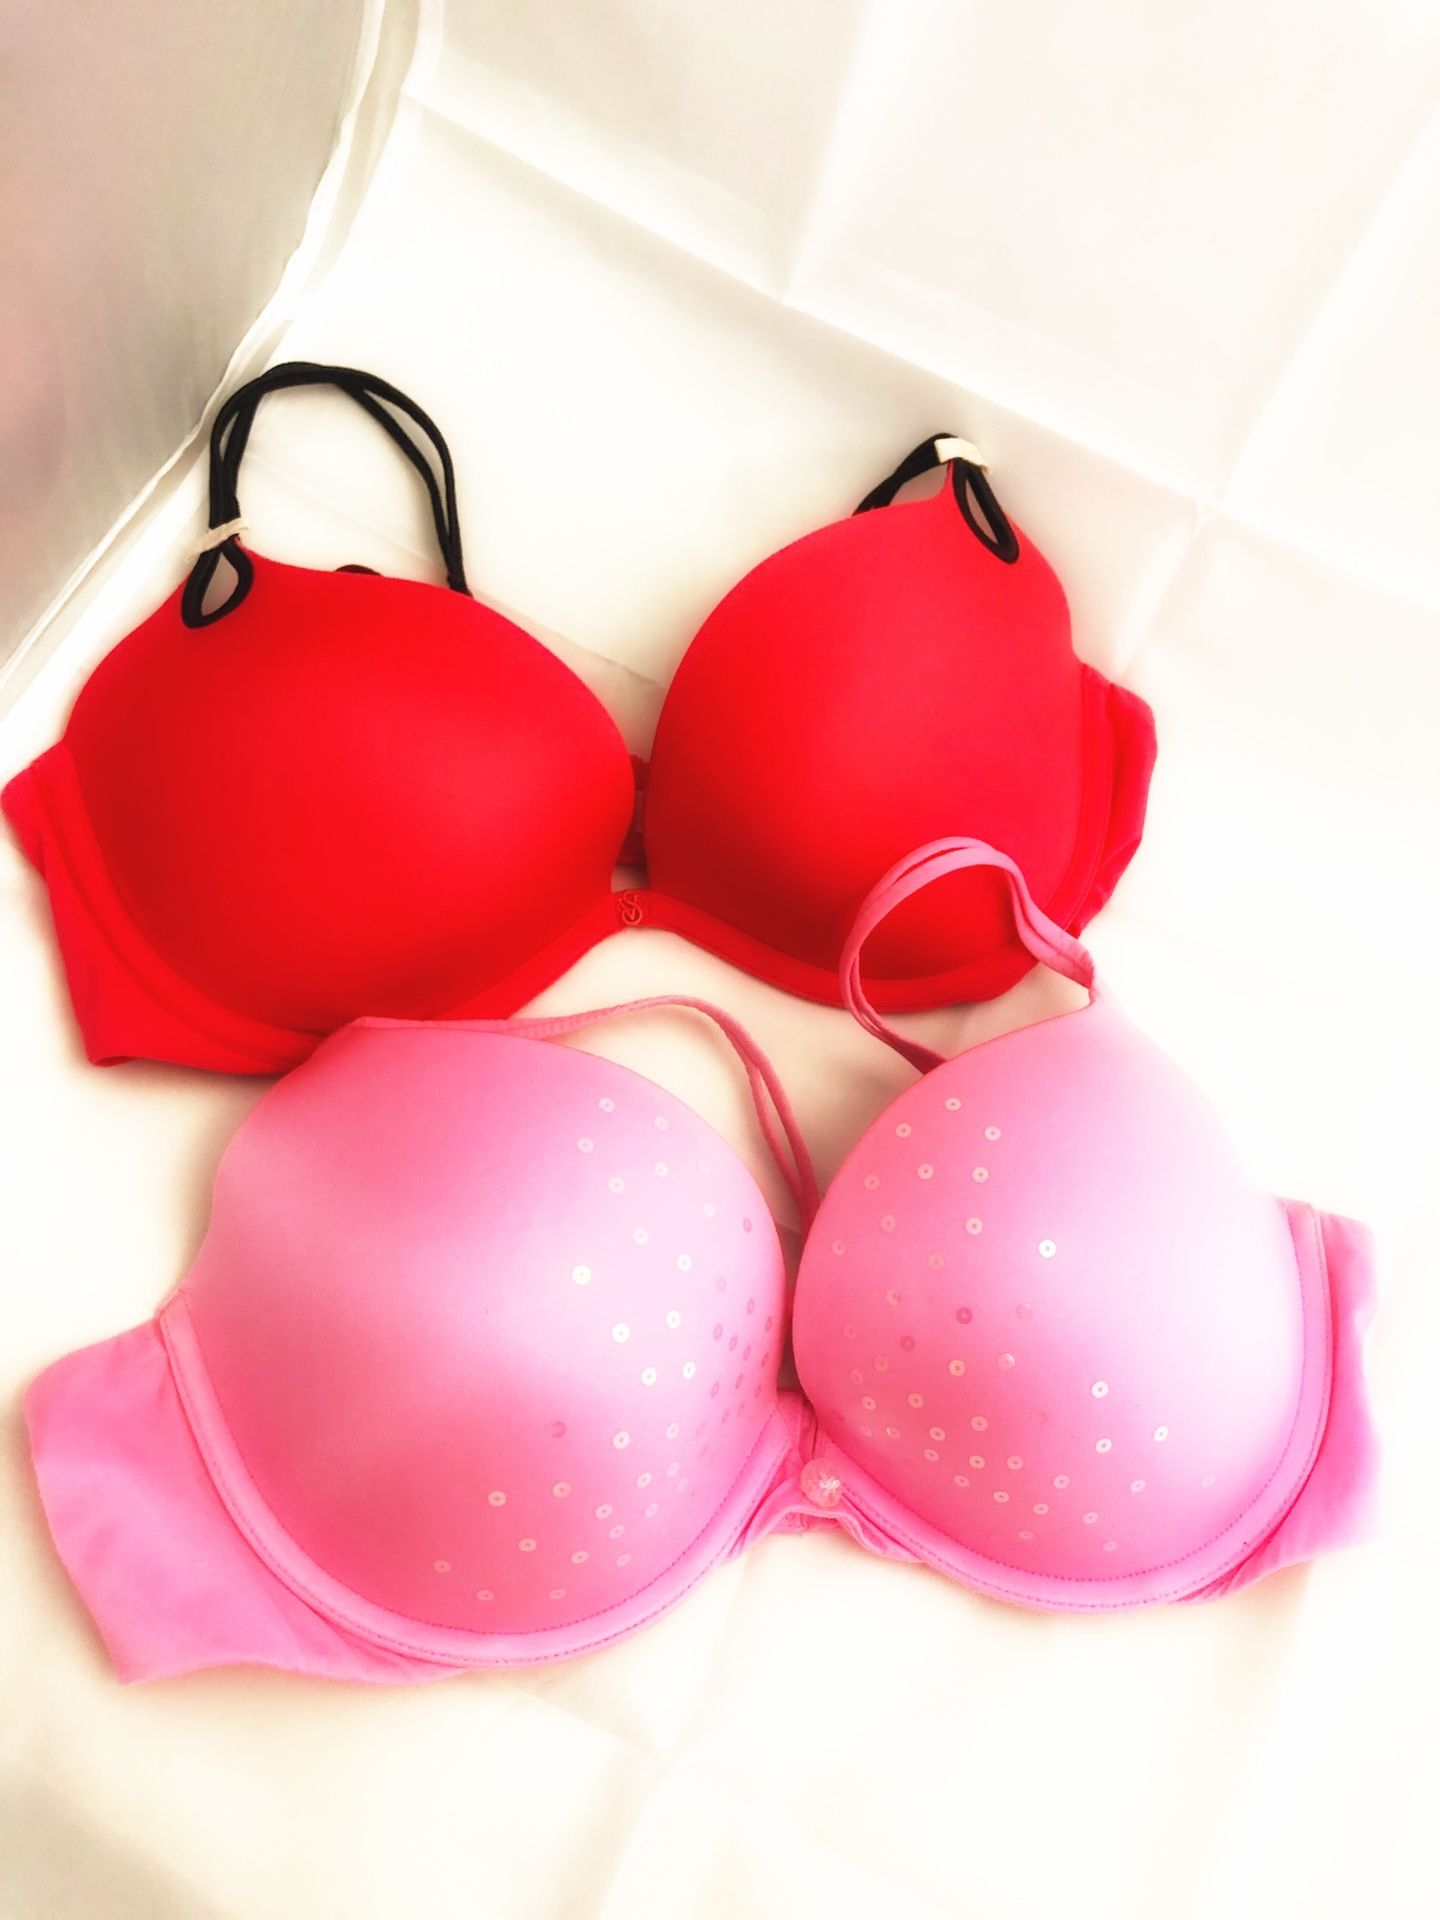 Victoria’s Secret bras 36C